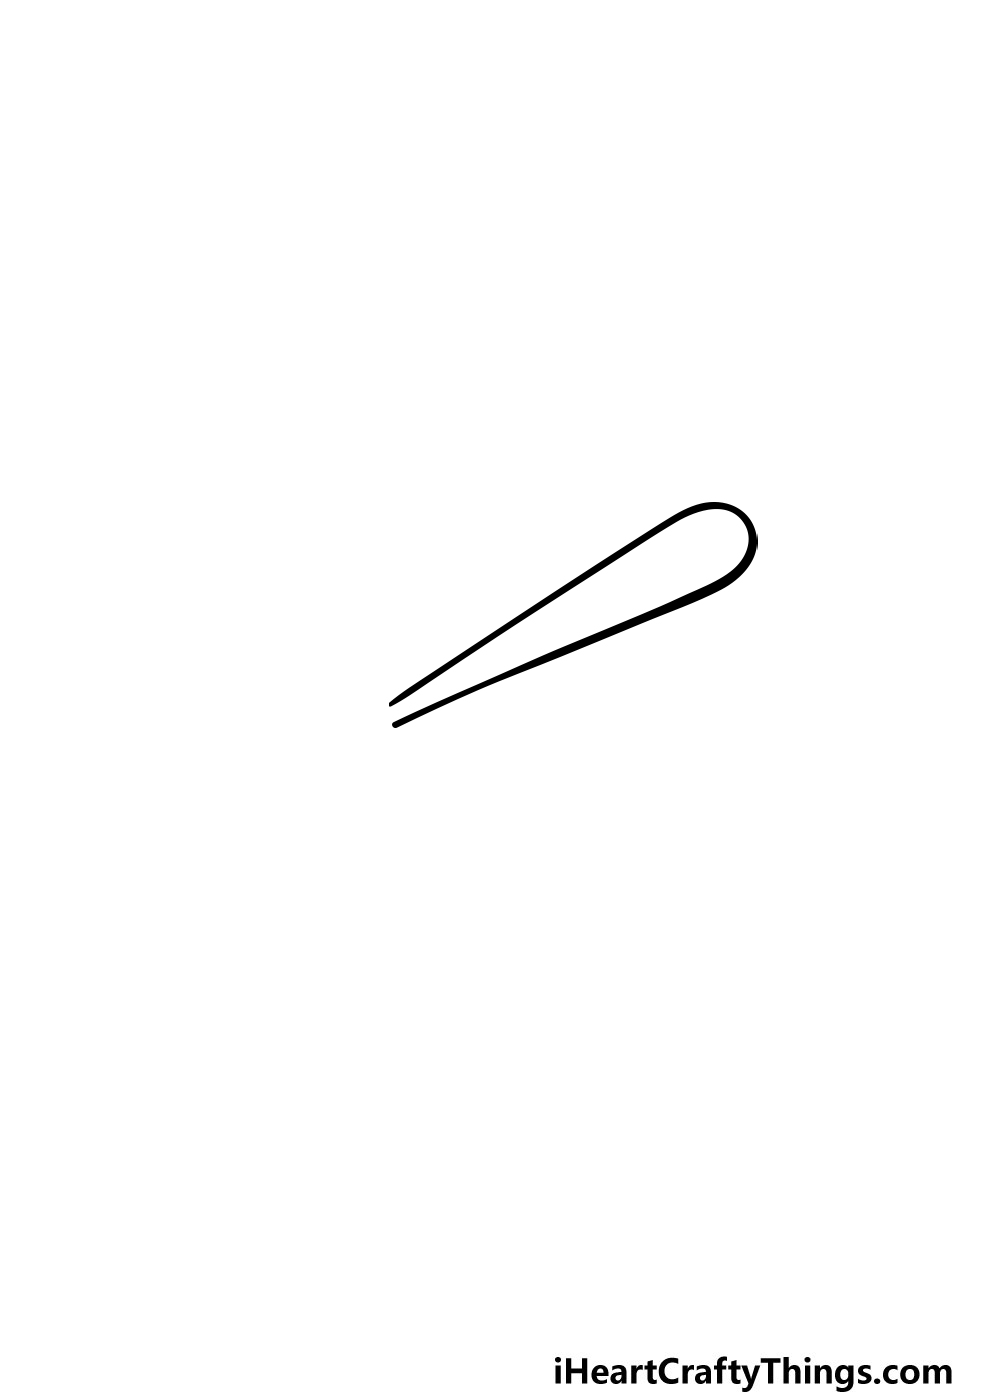 baseball bat drawing step 1